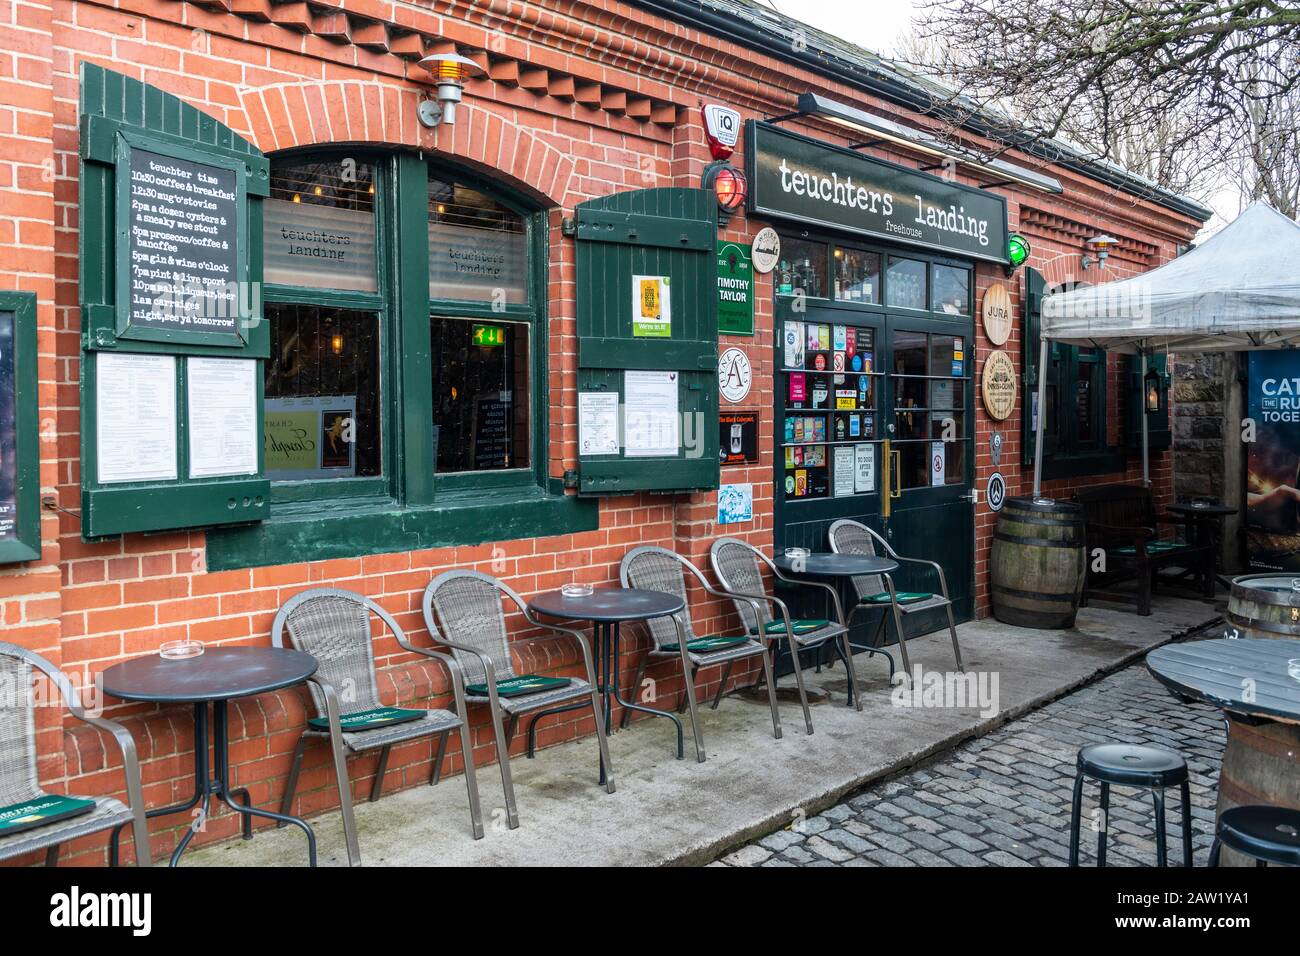 Teuchters Landing Pub und Restaurant am Dock Place in Leith, Edinburgh, Schottland, Großbritannien Stockfoto